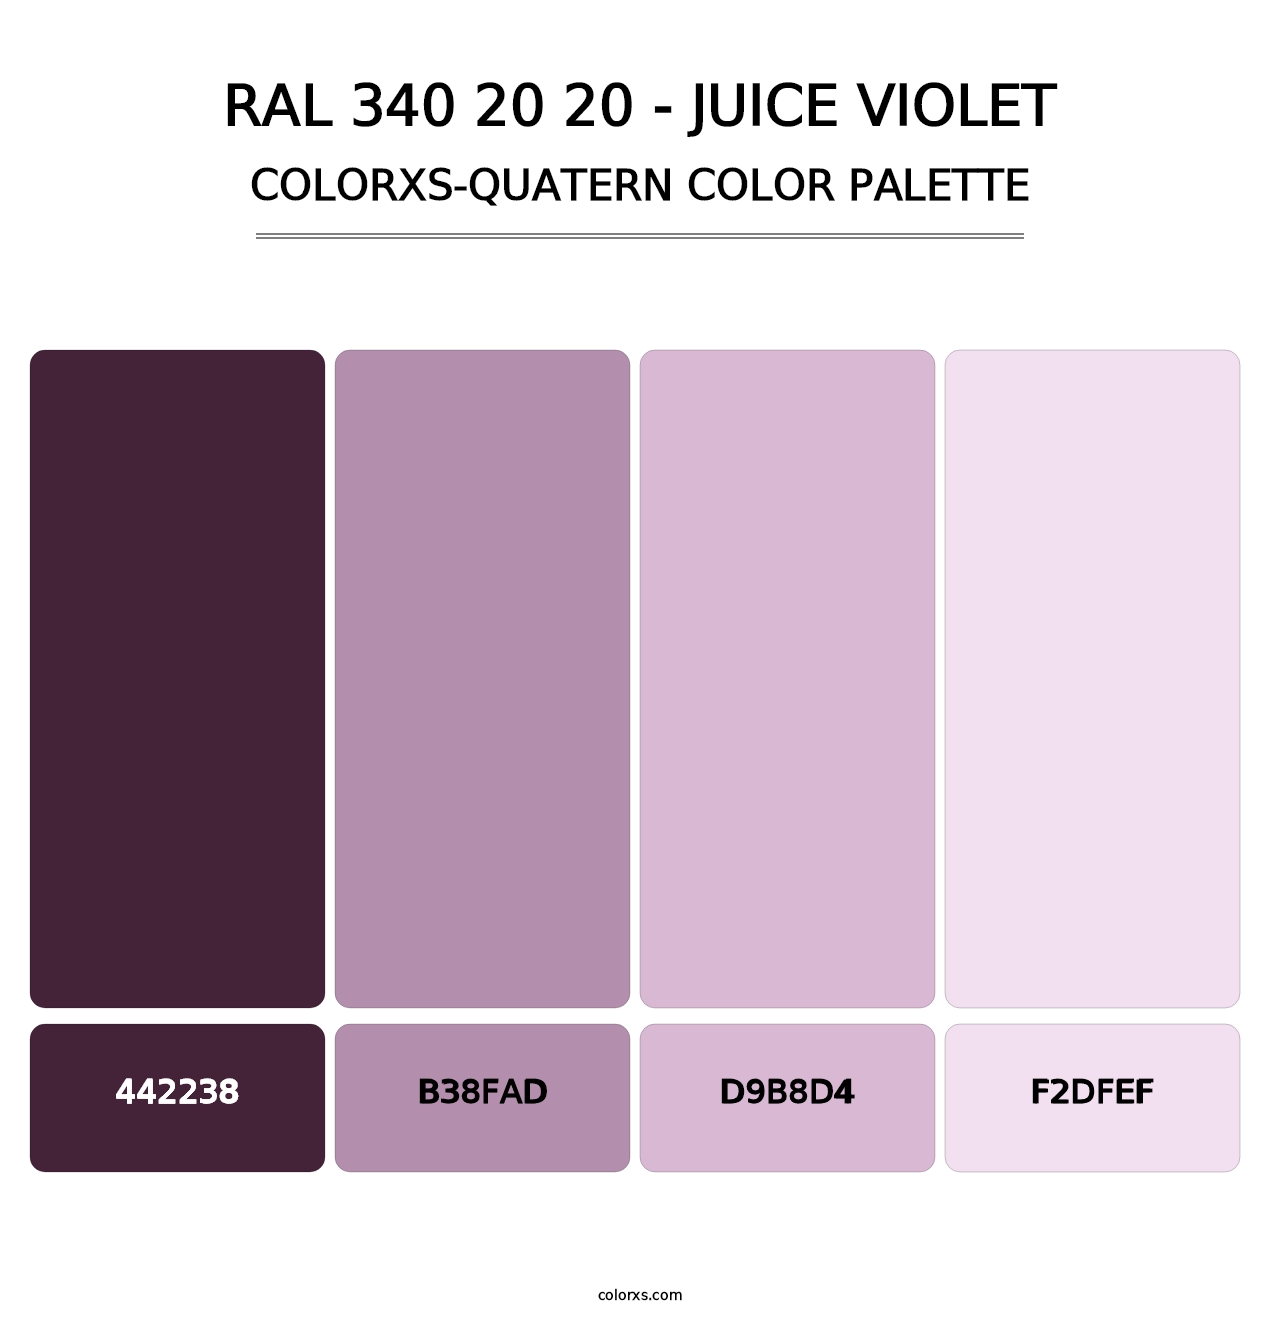 RAL 340 20 20 - Juice Violet - Colorxs Quatern Palette